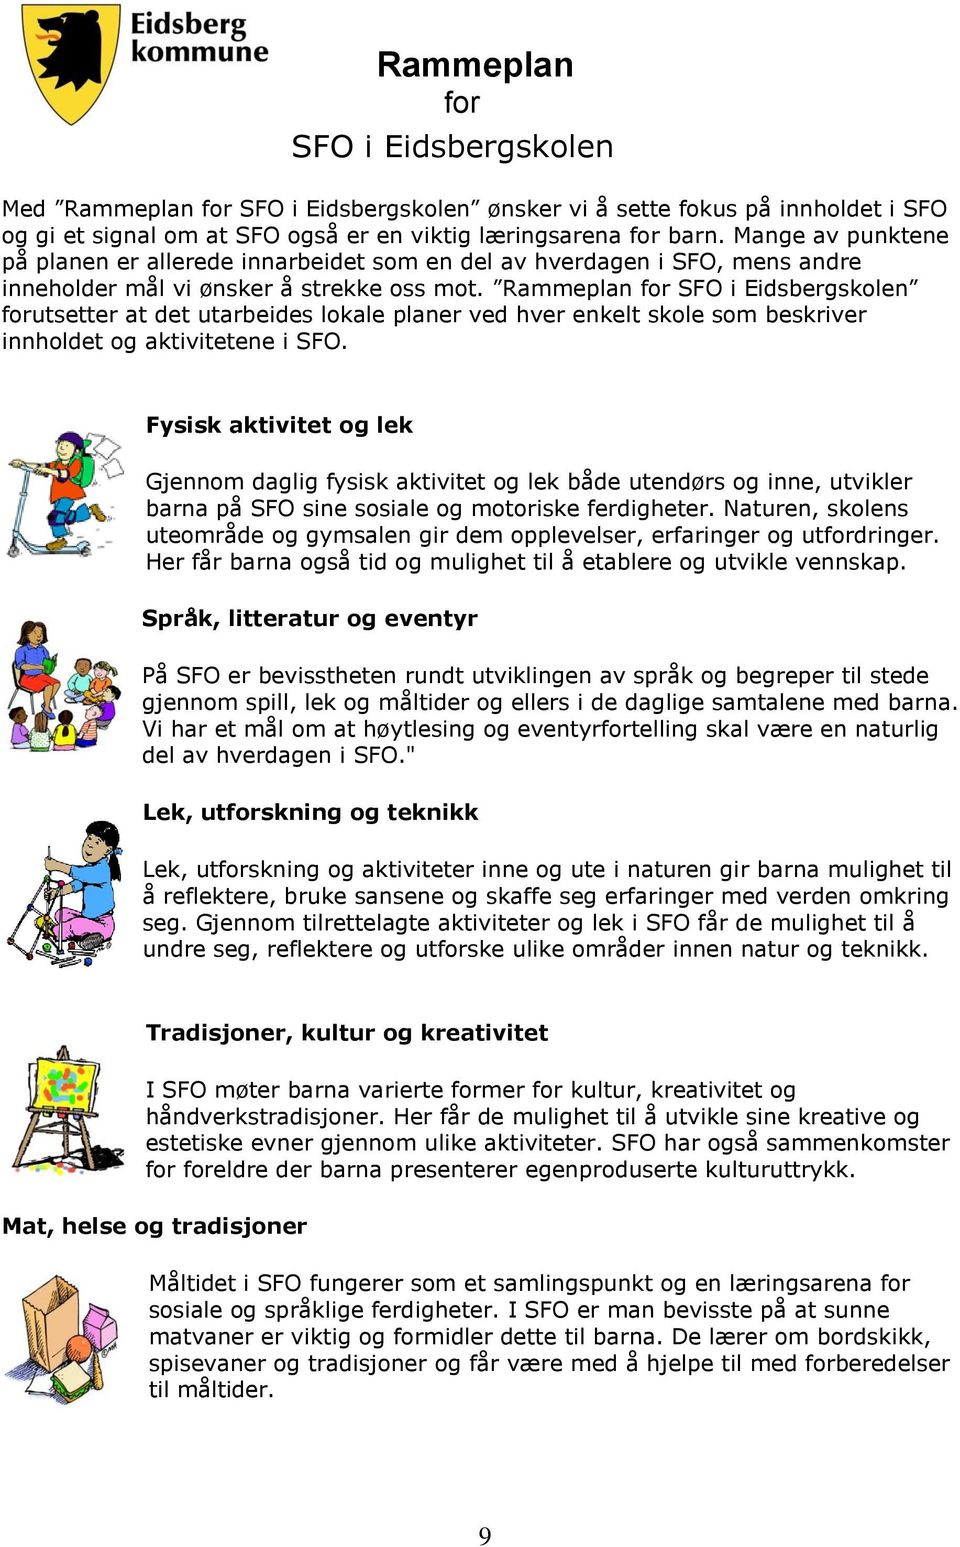 Rammeplan for SFO i Eidsbergskolen forutsetter at det utarbeides lokale planer ved hver enkelt skole som beskriver innholdet og aktivitetene i SFO.